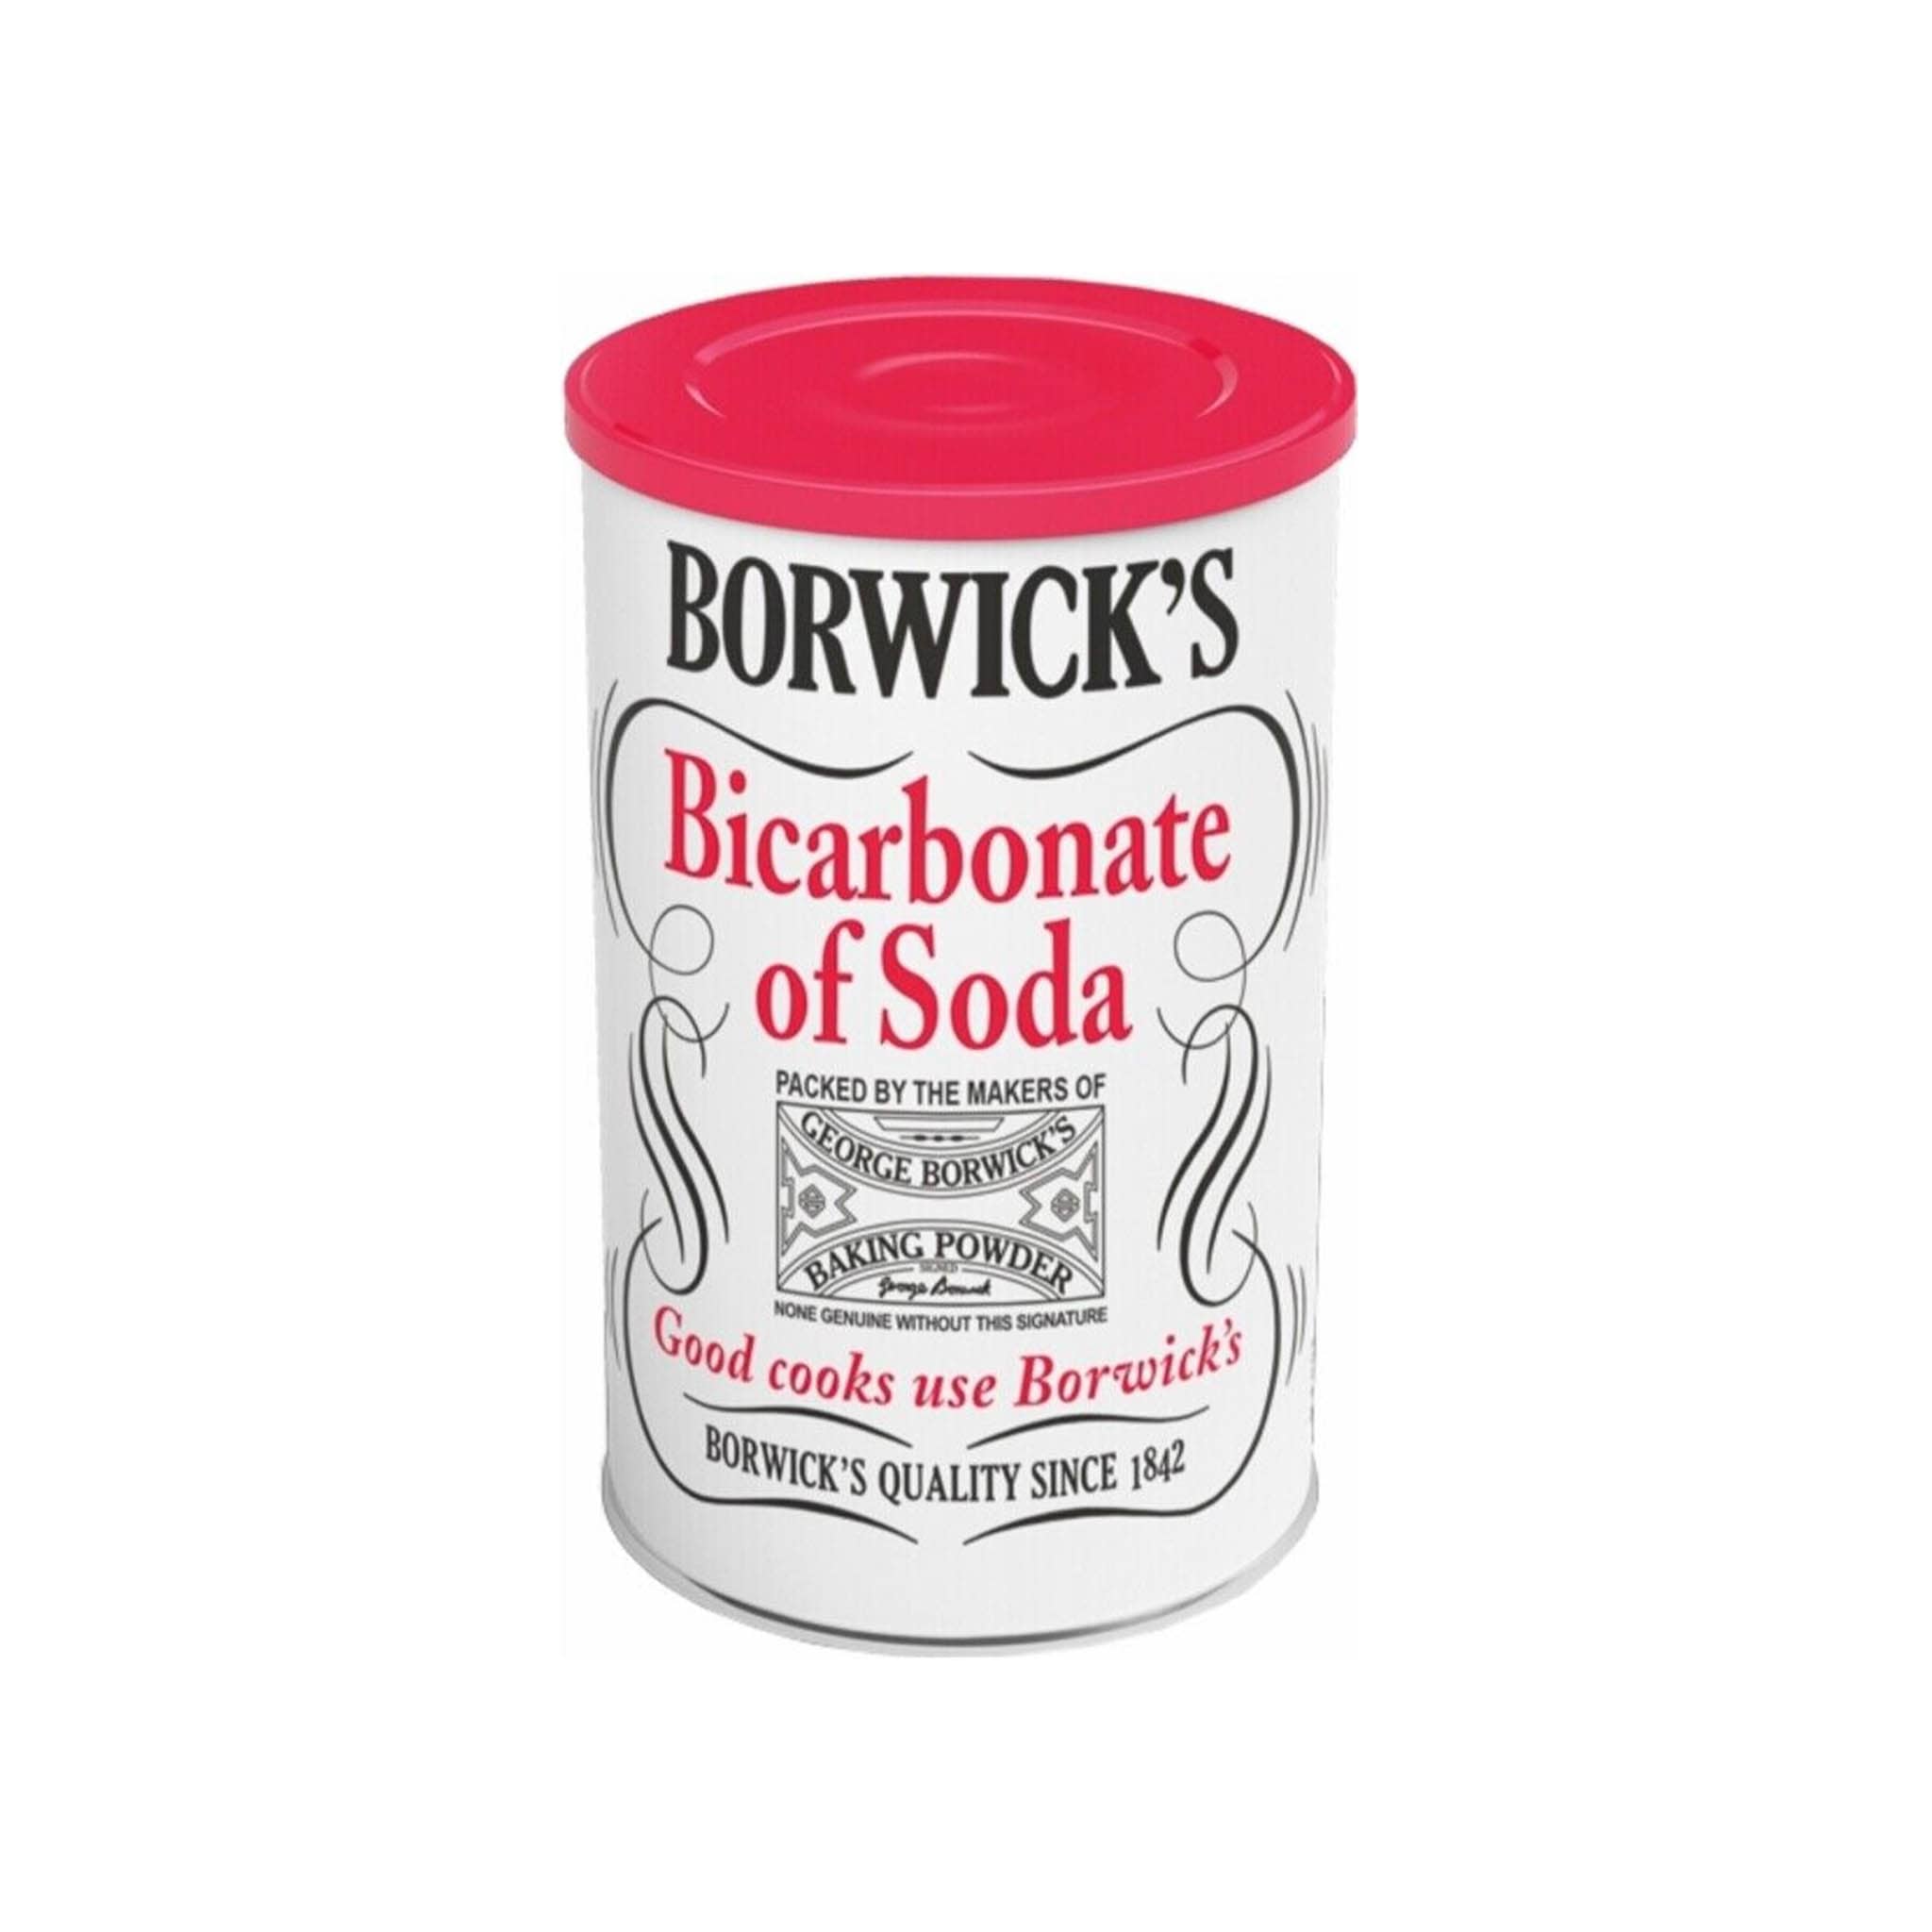 Borwicks Bicarbonate Of Soda, 100g